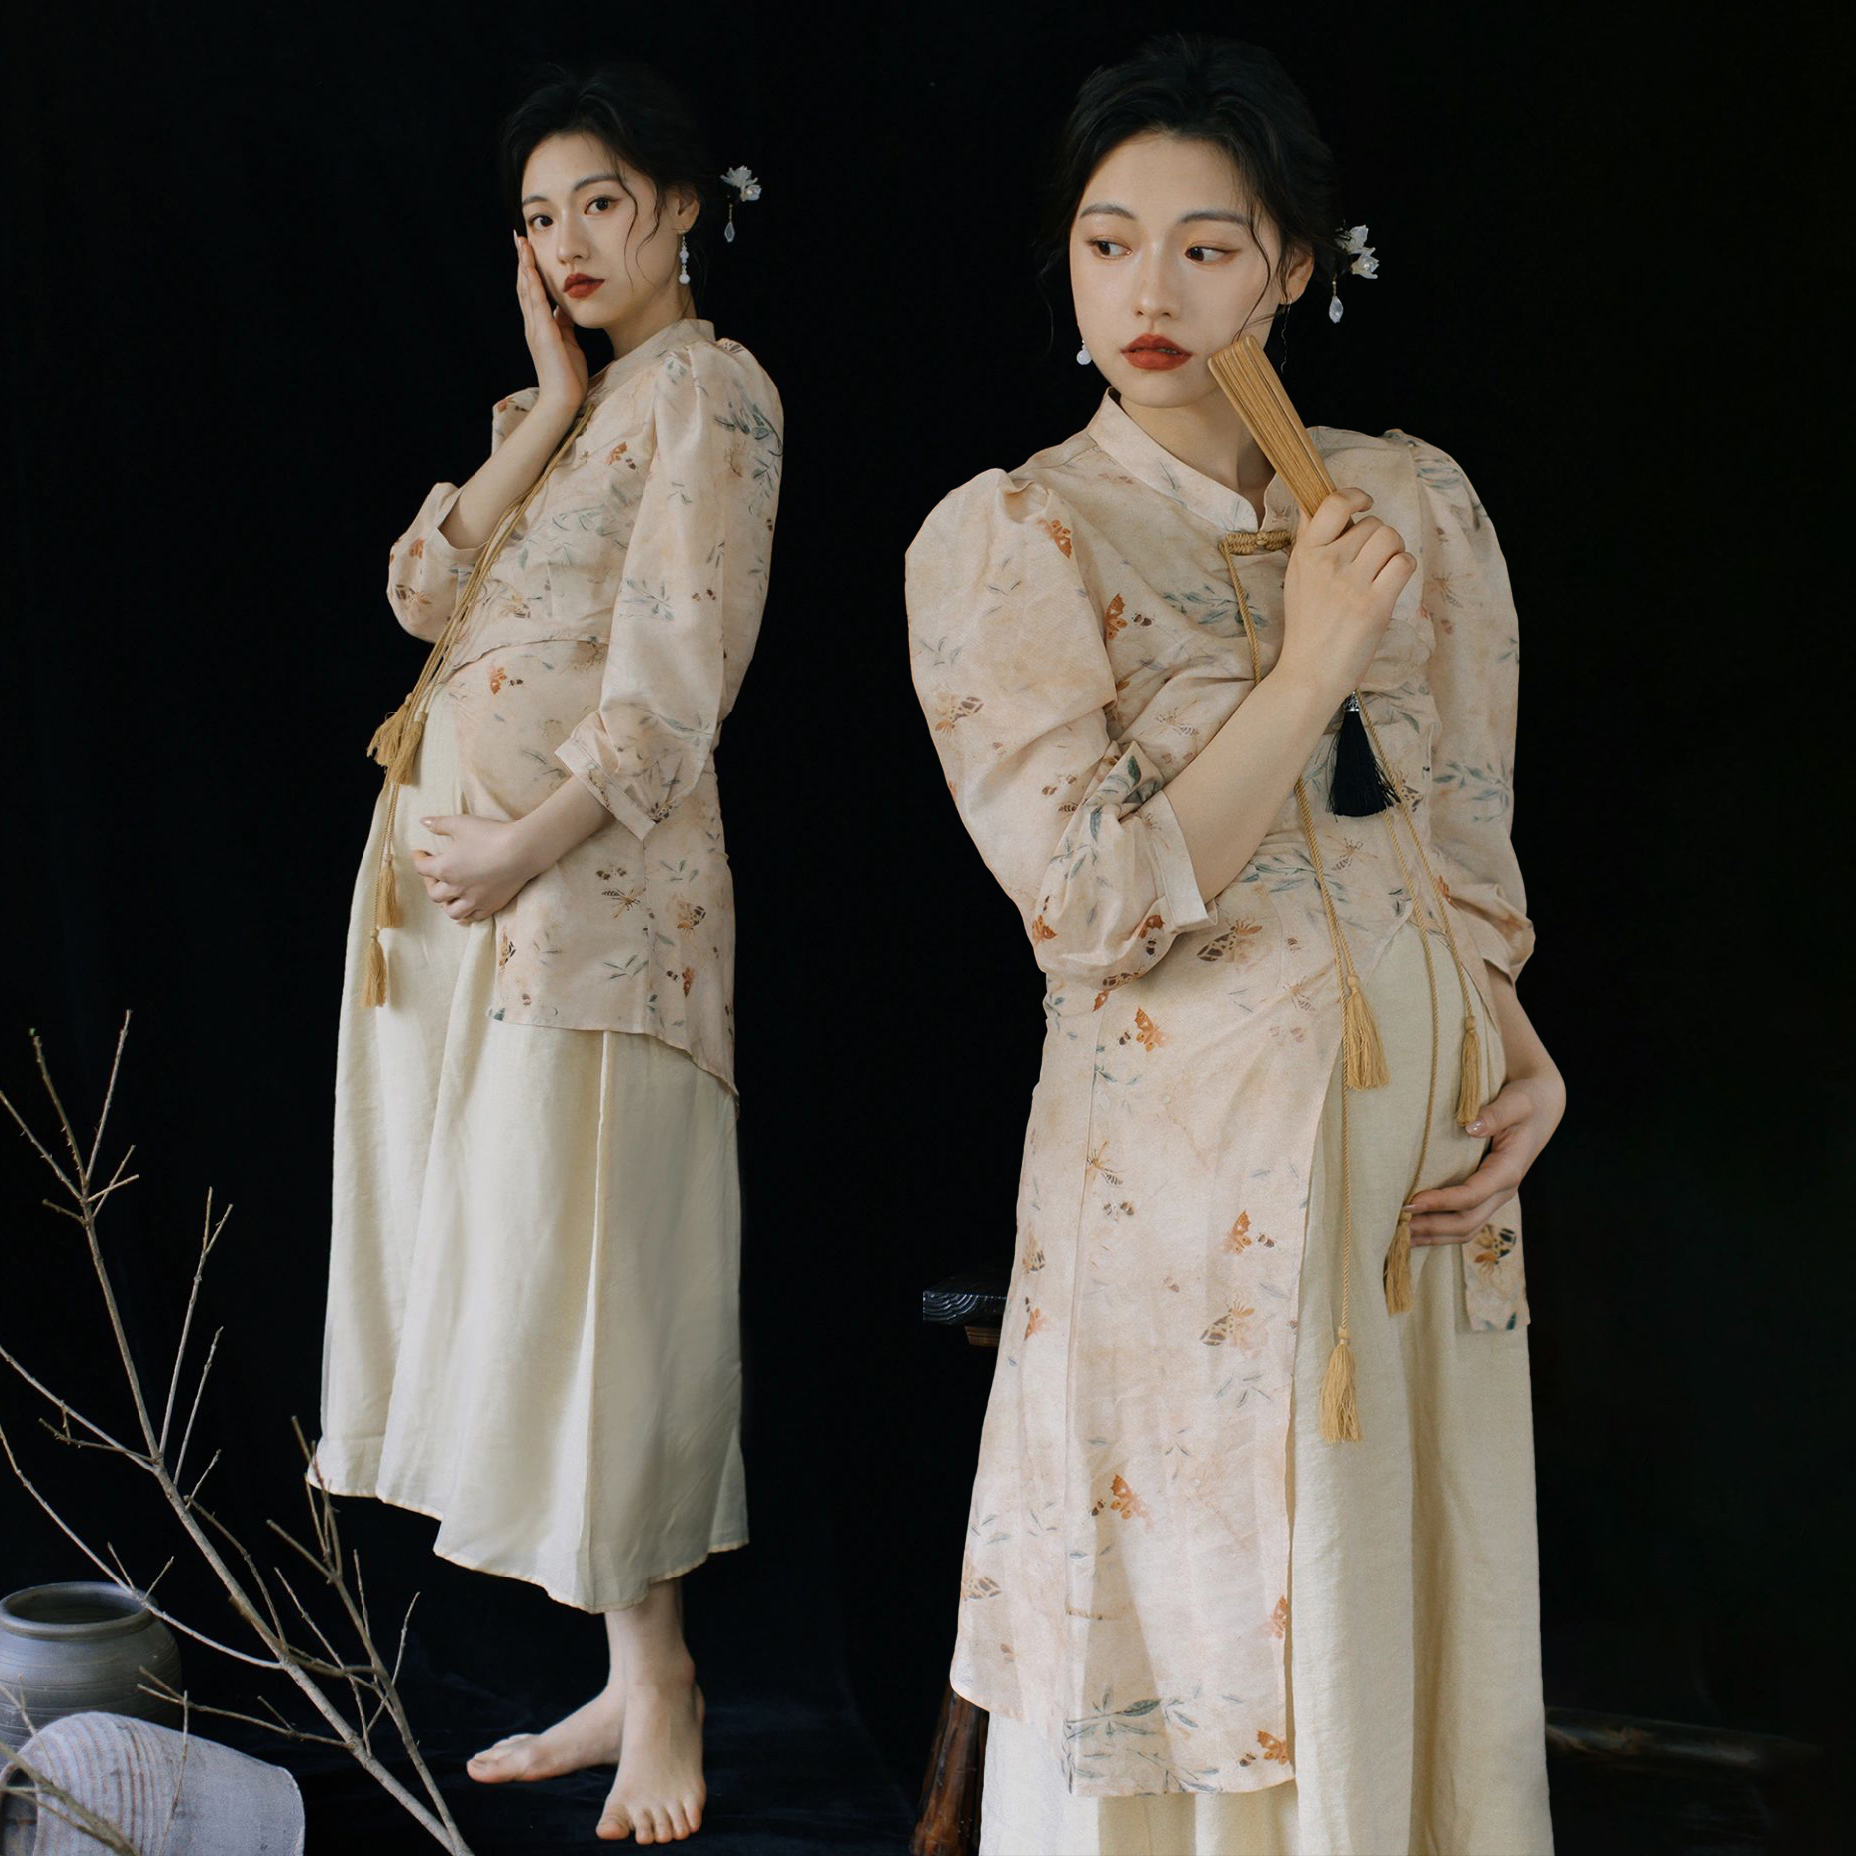 新款影楼复古国潮民国风旗袍拍照摄影写真孕妇服装